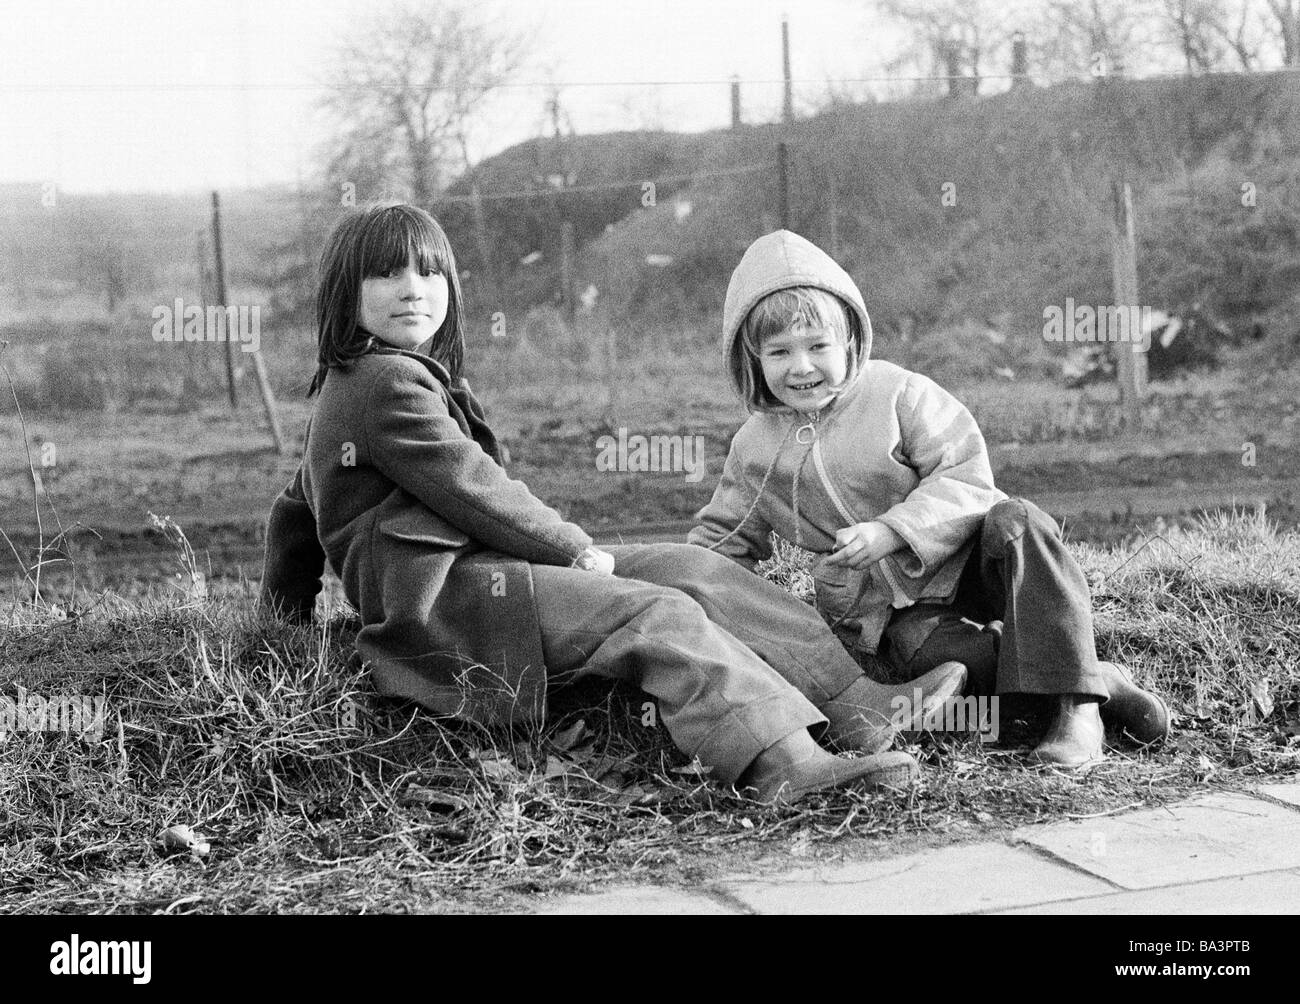 Negli anni settanta, foto in bianco e nero, persone, bambini, due bambine sit in erba, di età compresa tra i 5 e i 10 anni Foto Stock